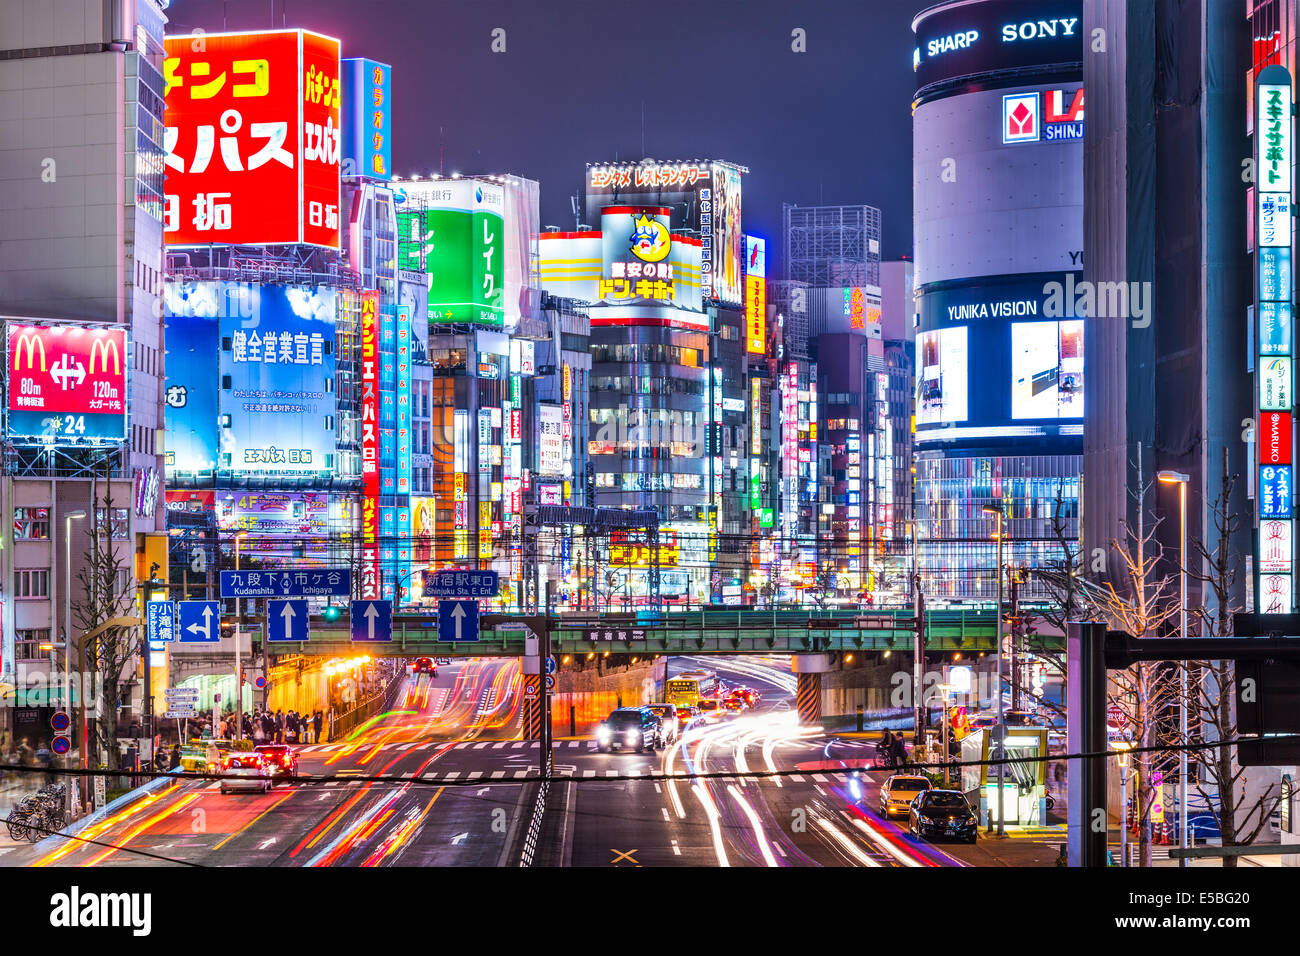 TOKYO, JAPON - 19 mars 2014 : le quartier de Shinjuku est éclairée la nuit. Le quartier est un centre de la vie nocturne renommée. Banque D'Images